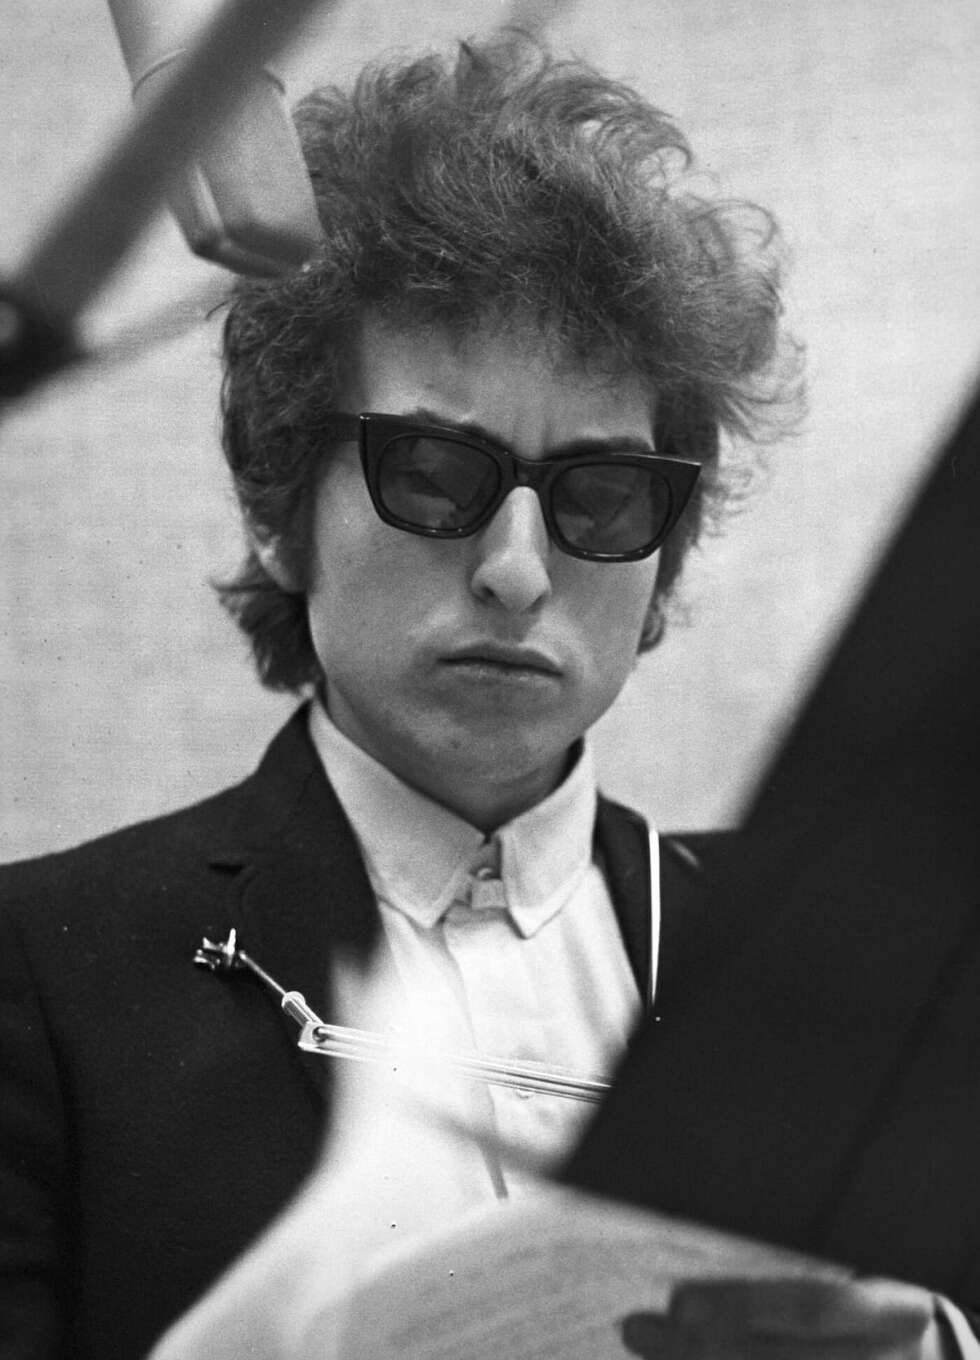 Bob Dylan Portrait